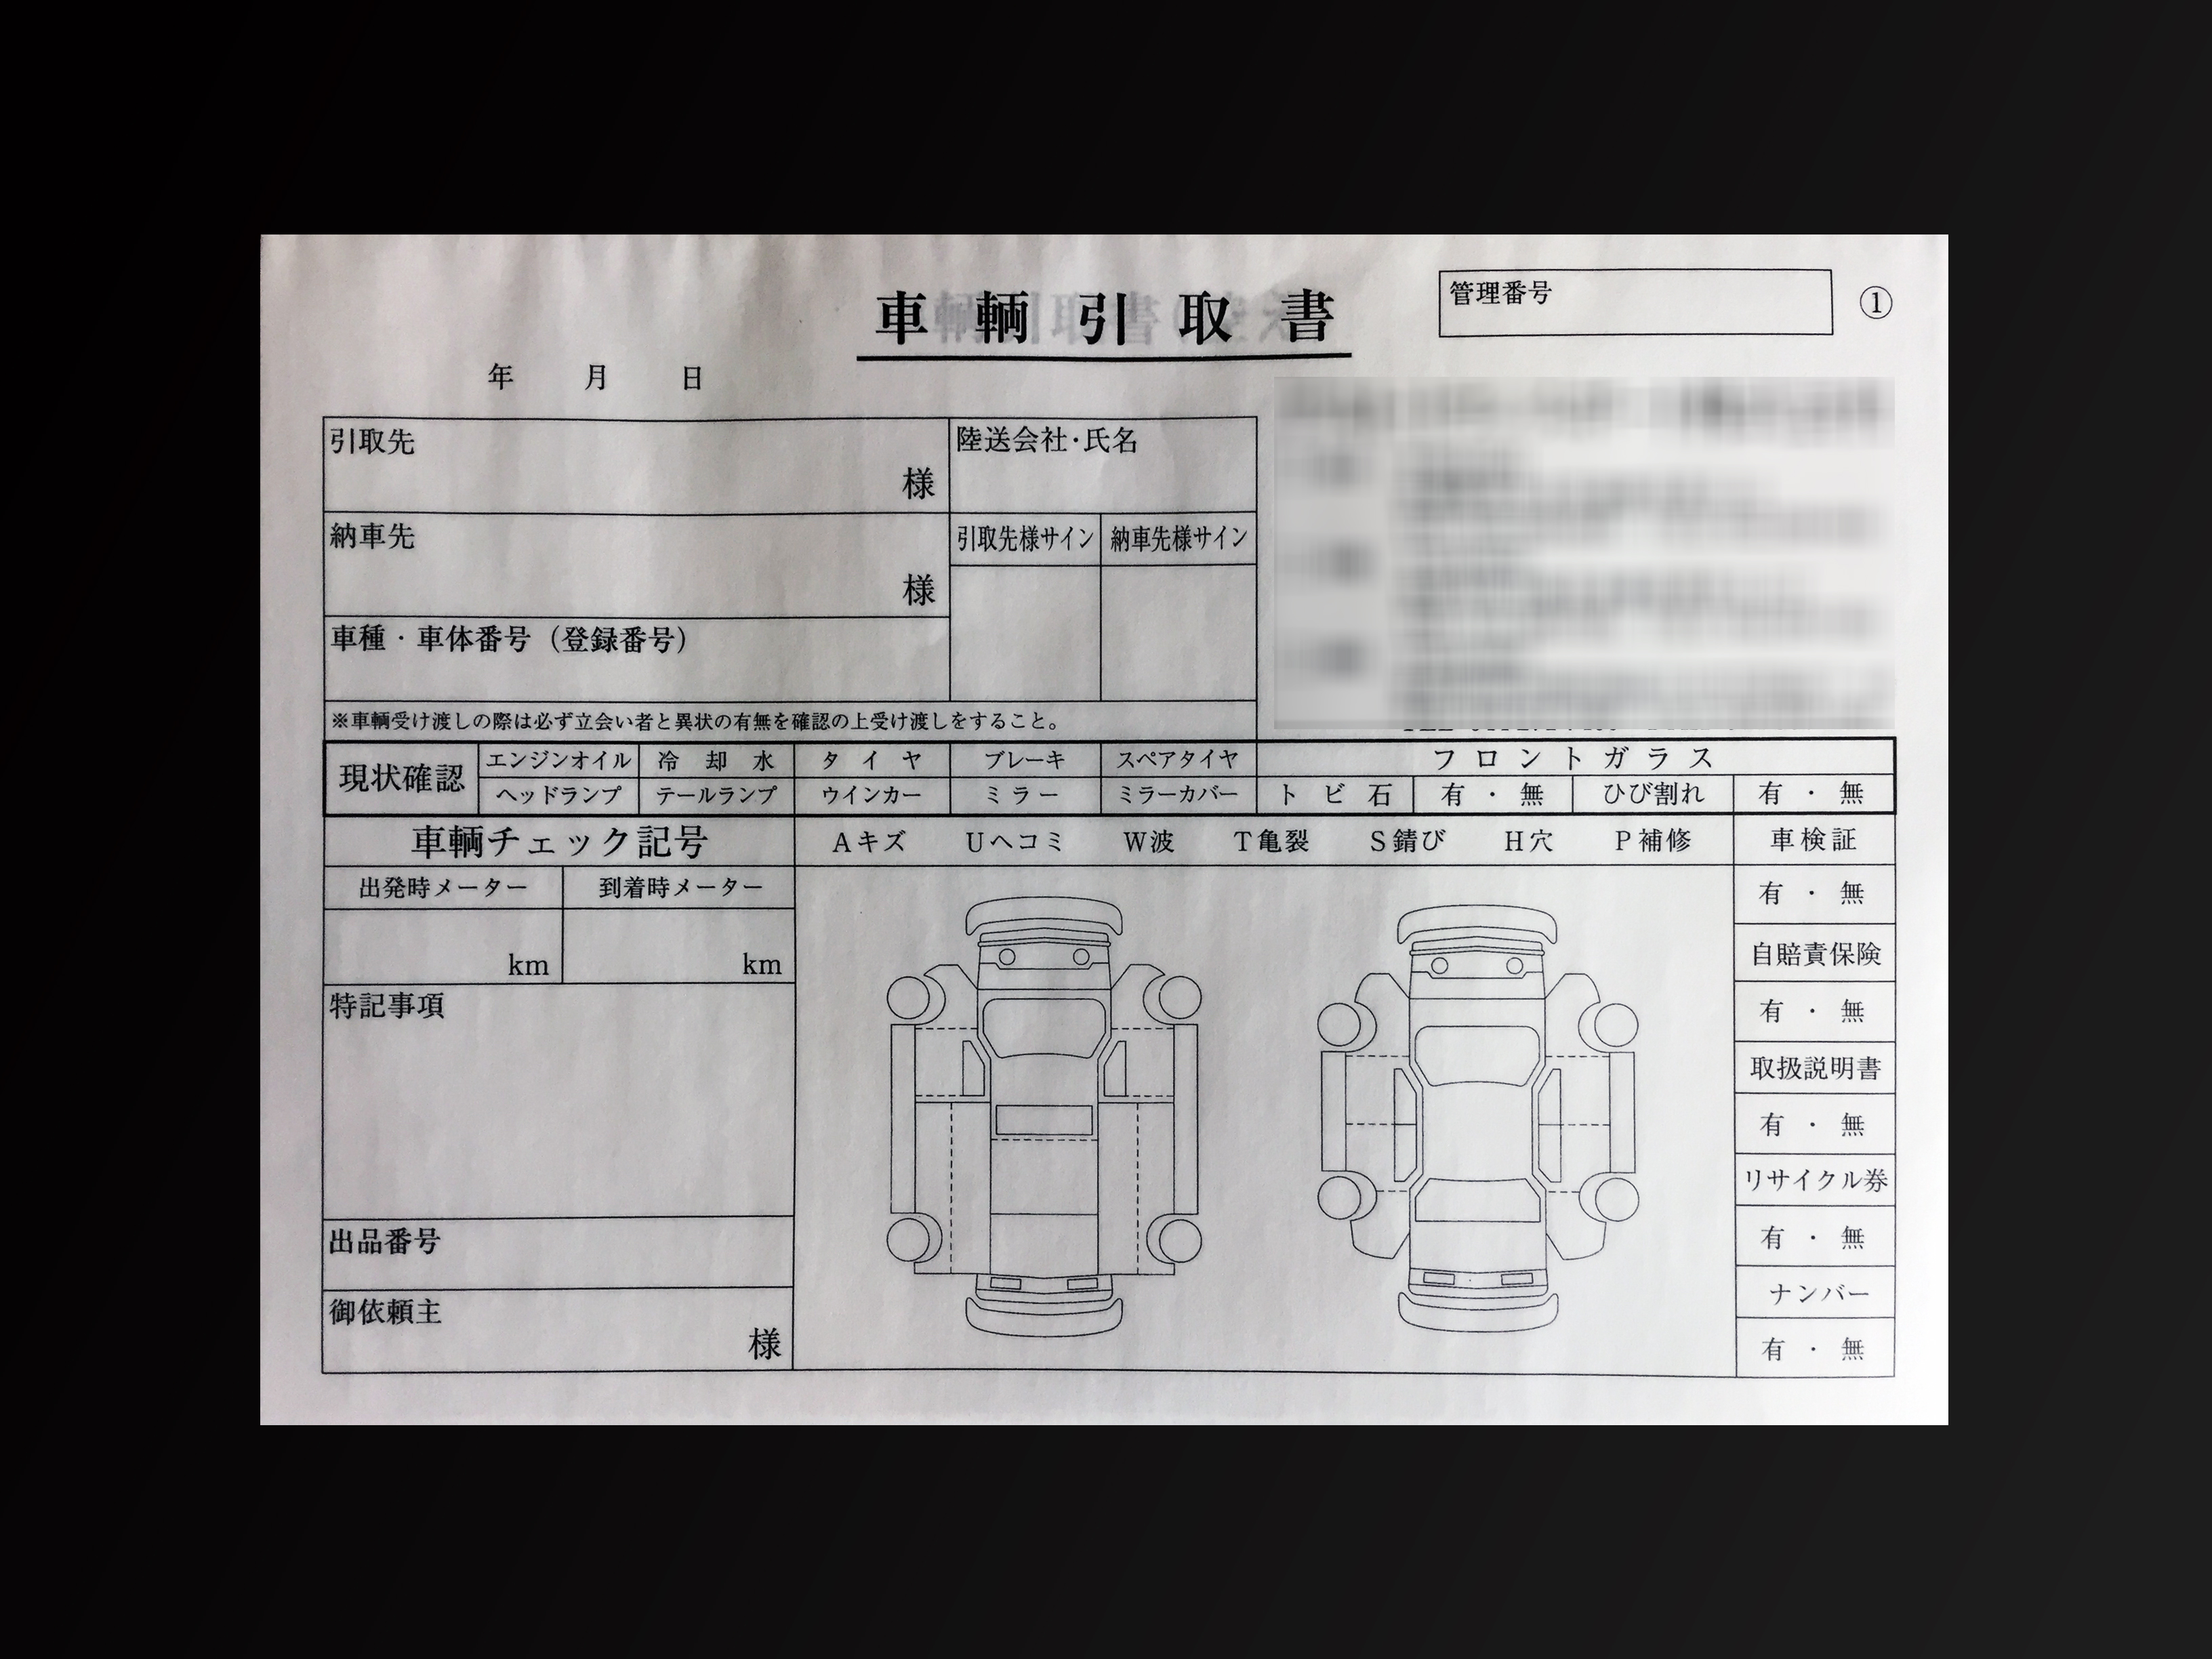 整備業で使用する車輪引取書(5枚複写)の伝票作成実績